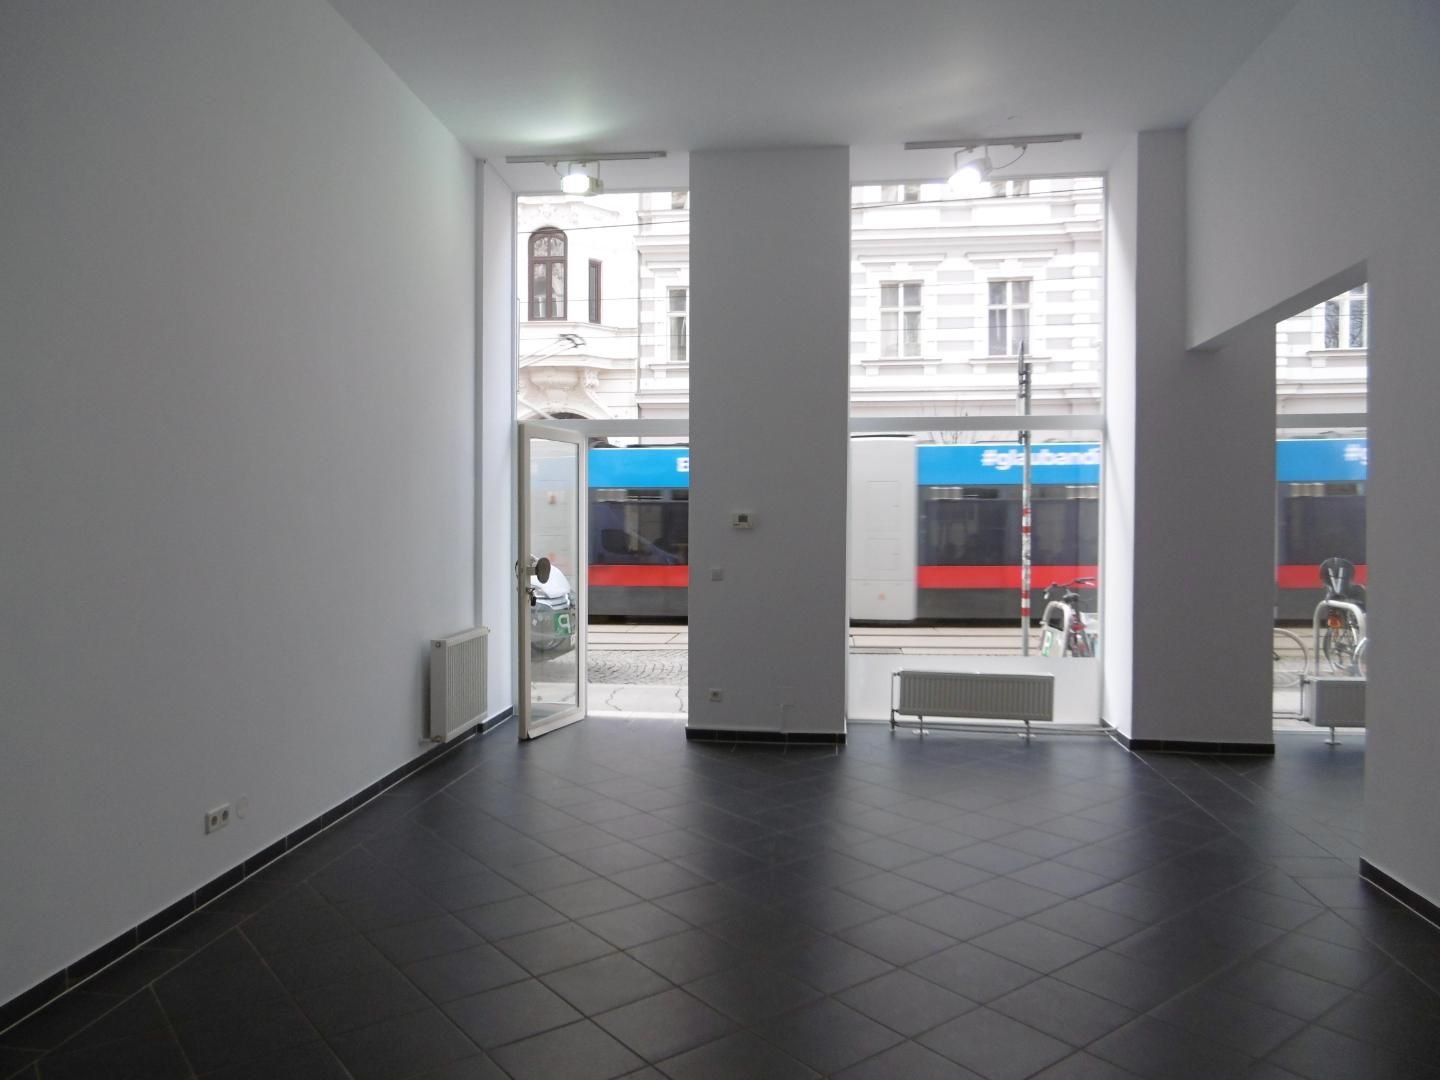 Laden zur Miete 1.802,59 € 63 m² Verkaufsfläche Porzellangasse Wien 1090